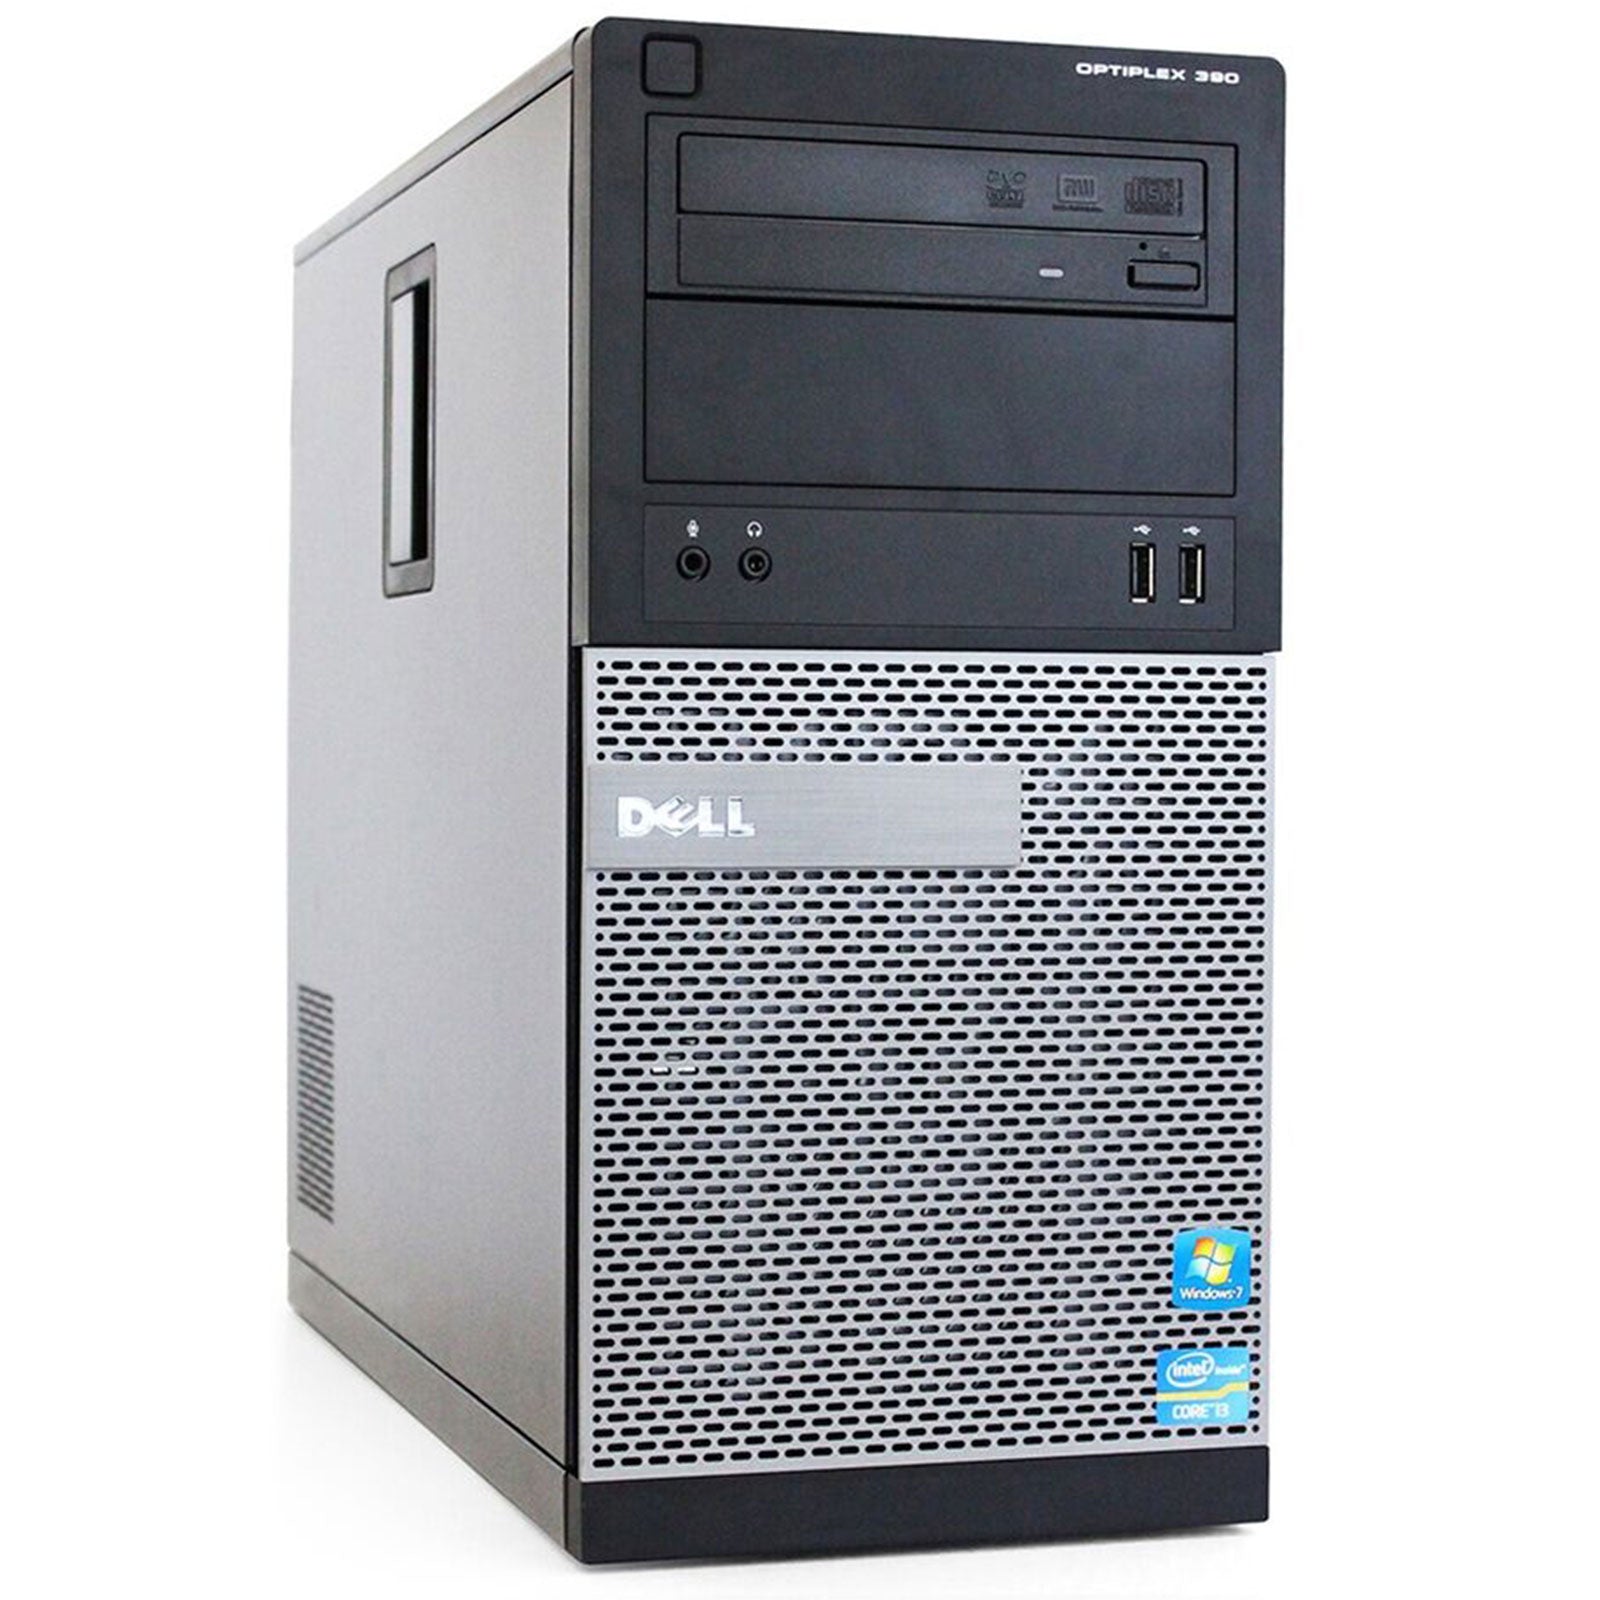 PC Desktop Ricondizionato - Grado A - Dell Optiplex 390 Tower PC Computer Intel i7-2600 Ram 16GB SSD 240GB HDD 500GB DVD-ROM Freedos (Ricondizionato) - Disponibile in 2-4 giorni lavorativi